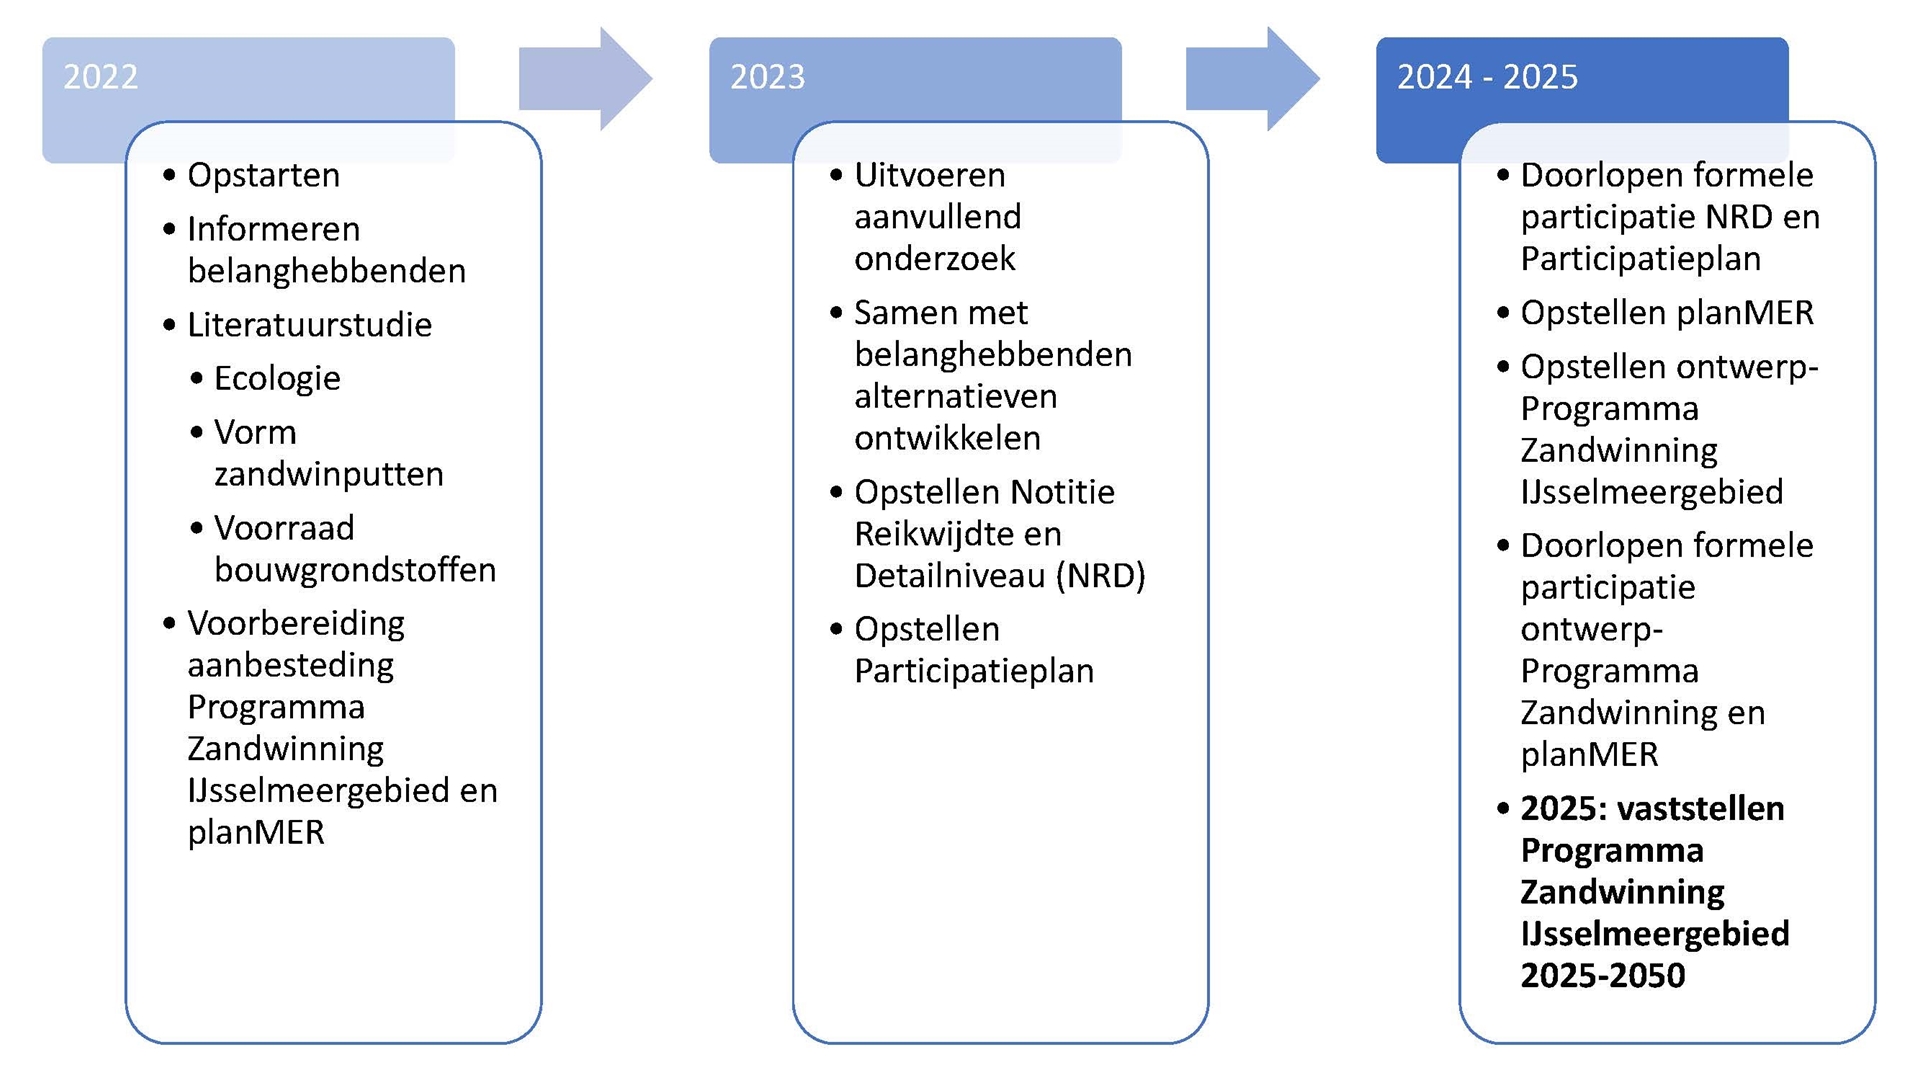 Deze afbeelding geeft schematisch de planning weer van het Programma Zandwinning IJsselmeergebied 2025 – 2050. Het Programma is in 2022 gestart met het informeren van belanghebbenden, een literatuurstudie naar ecologie, vaargeulen en voorraad bouwgrondstoffen en de voorbereiding van de aanbesteding voor het Programma Zandwinning en het planMER. In 2023 is aanvullend onderzoek uitgevoerd en zijn samen met belanghebbenden alternatieven ontwikkeld. Er is een Notitie Reikwijdte en Detailniveau (afgekort NRD) opgesteld en een Participatieplan. In de periode 2024-2025 doorlopen de NRD het Participatieplan een formele participatieprocedure. Vervolgens worden achtereenvolgens het planMER en het ontwerp-Programma Zandwinning IJsselmeergebied opgesteld, die de formele participatieprocedure zullen doorlopen. In 2025 wordt het Programma Zandwinning IJsselmeergebied 2025-2050 vastgesteld.